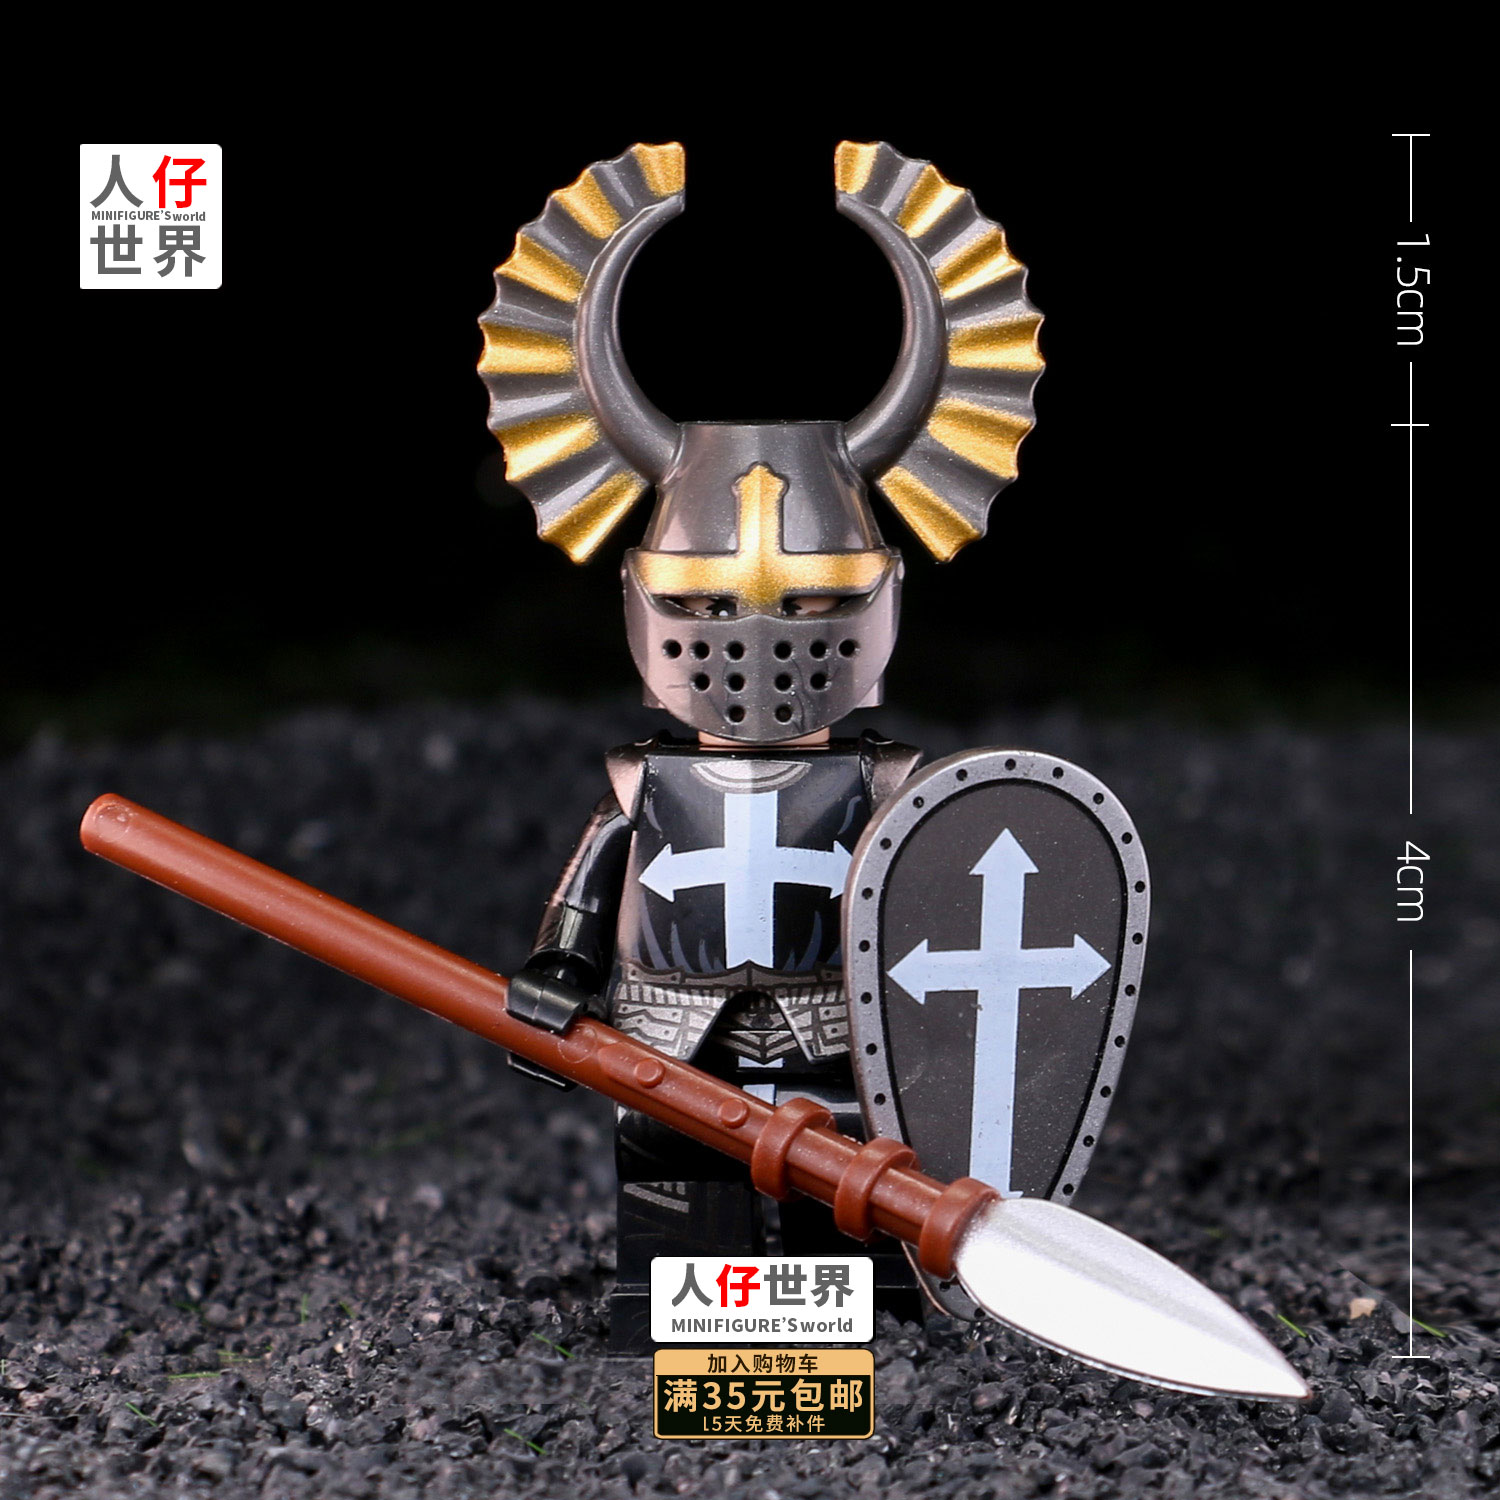 第三方武士积木人仔欧洲中世纪十字军骑士兵塑料拼装小颗粒潮玩具